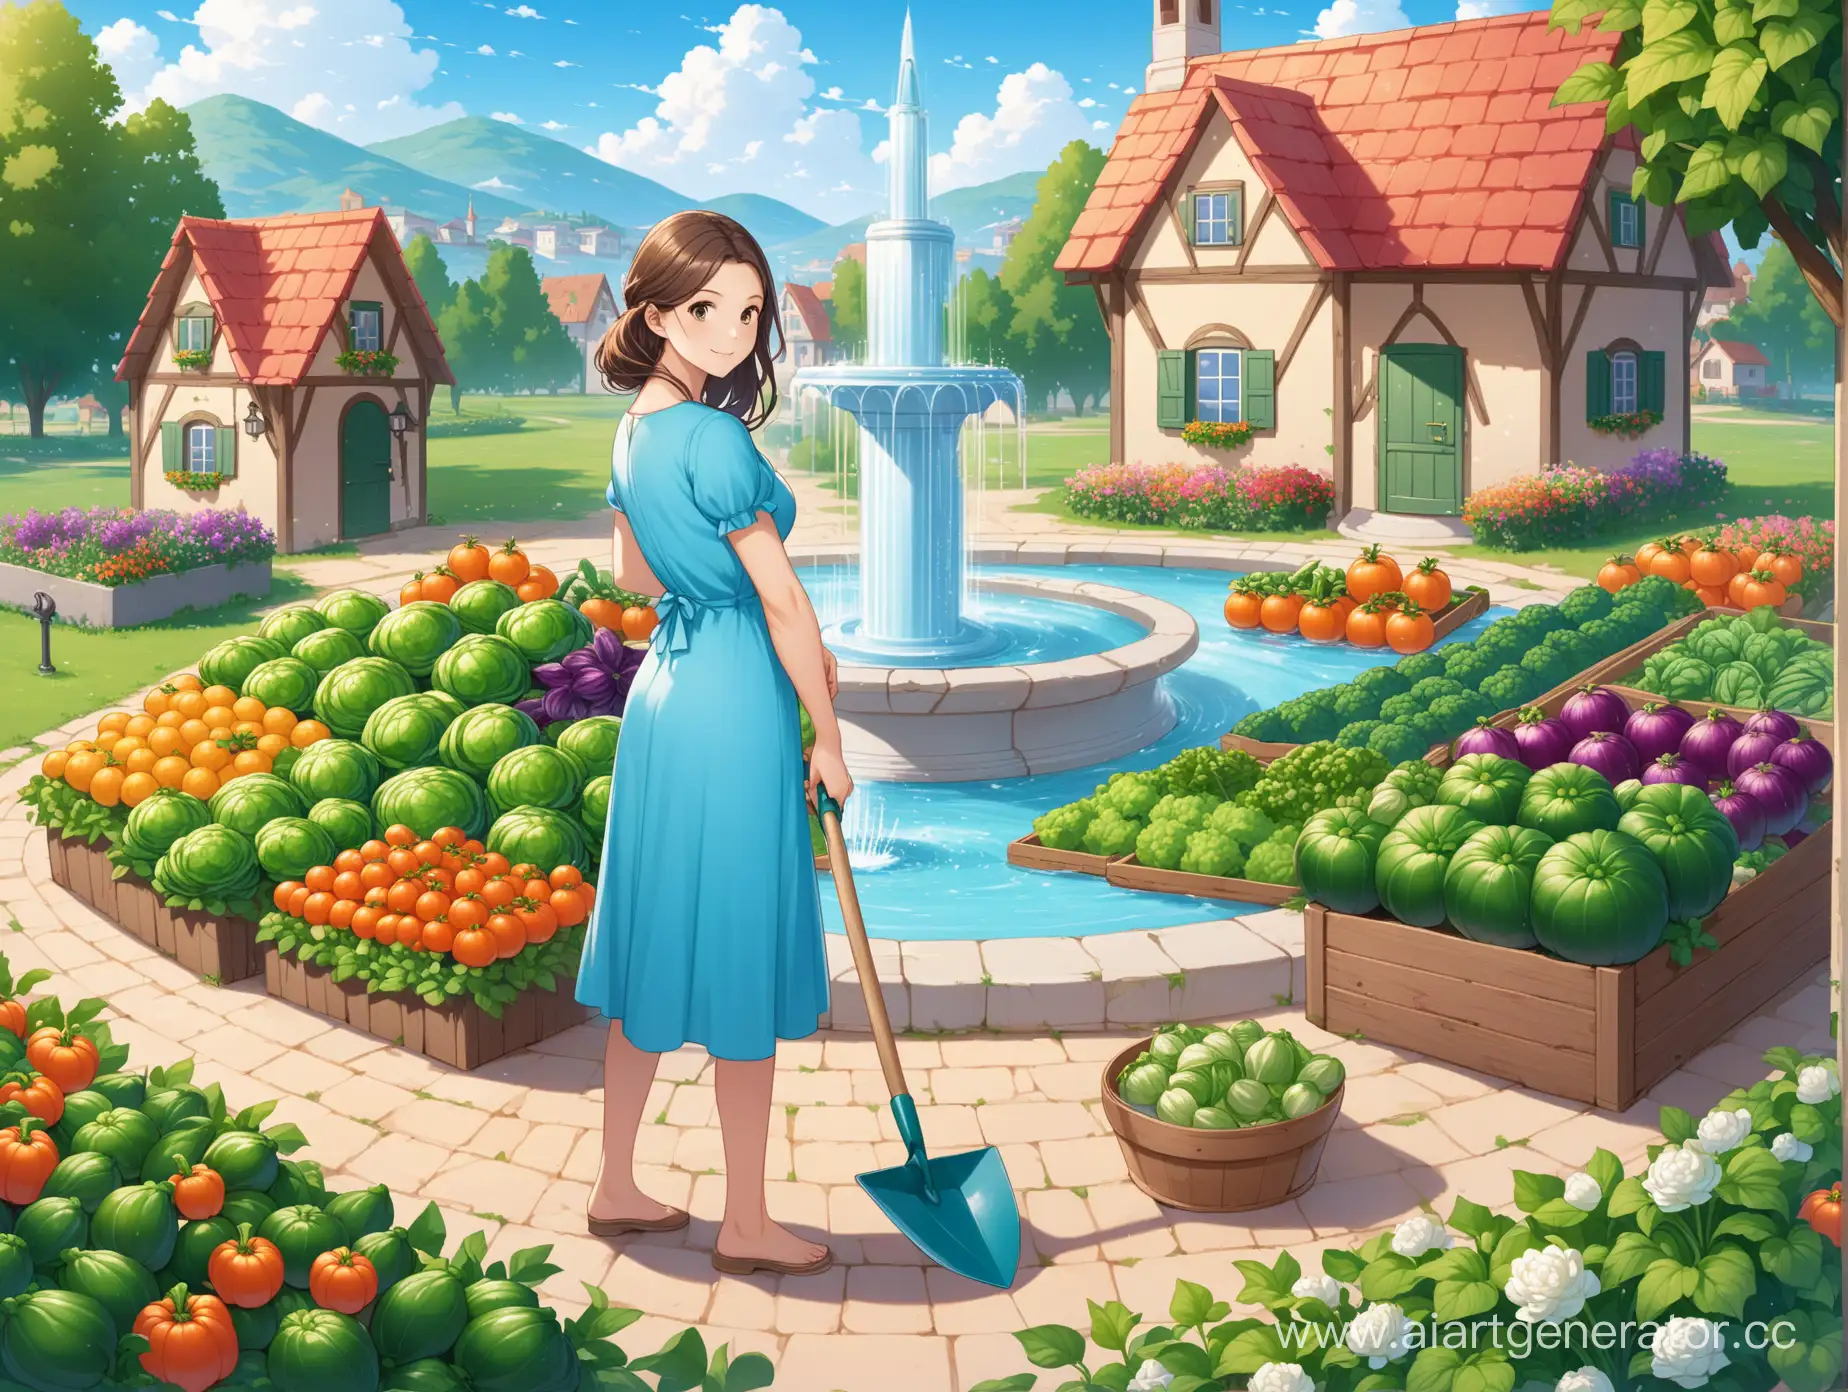 женщина в голубом платье с лопатой, вокруг овощи и цветы, фонтан и маленький домик